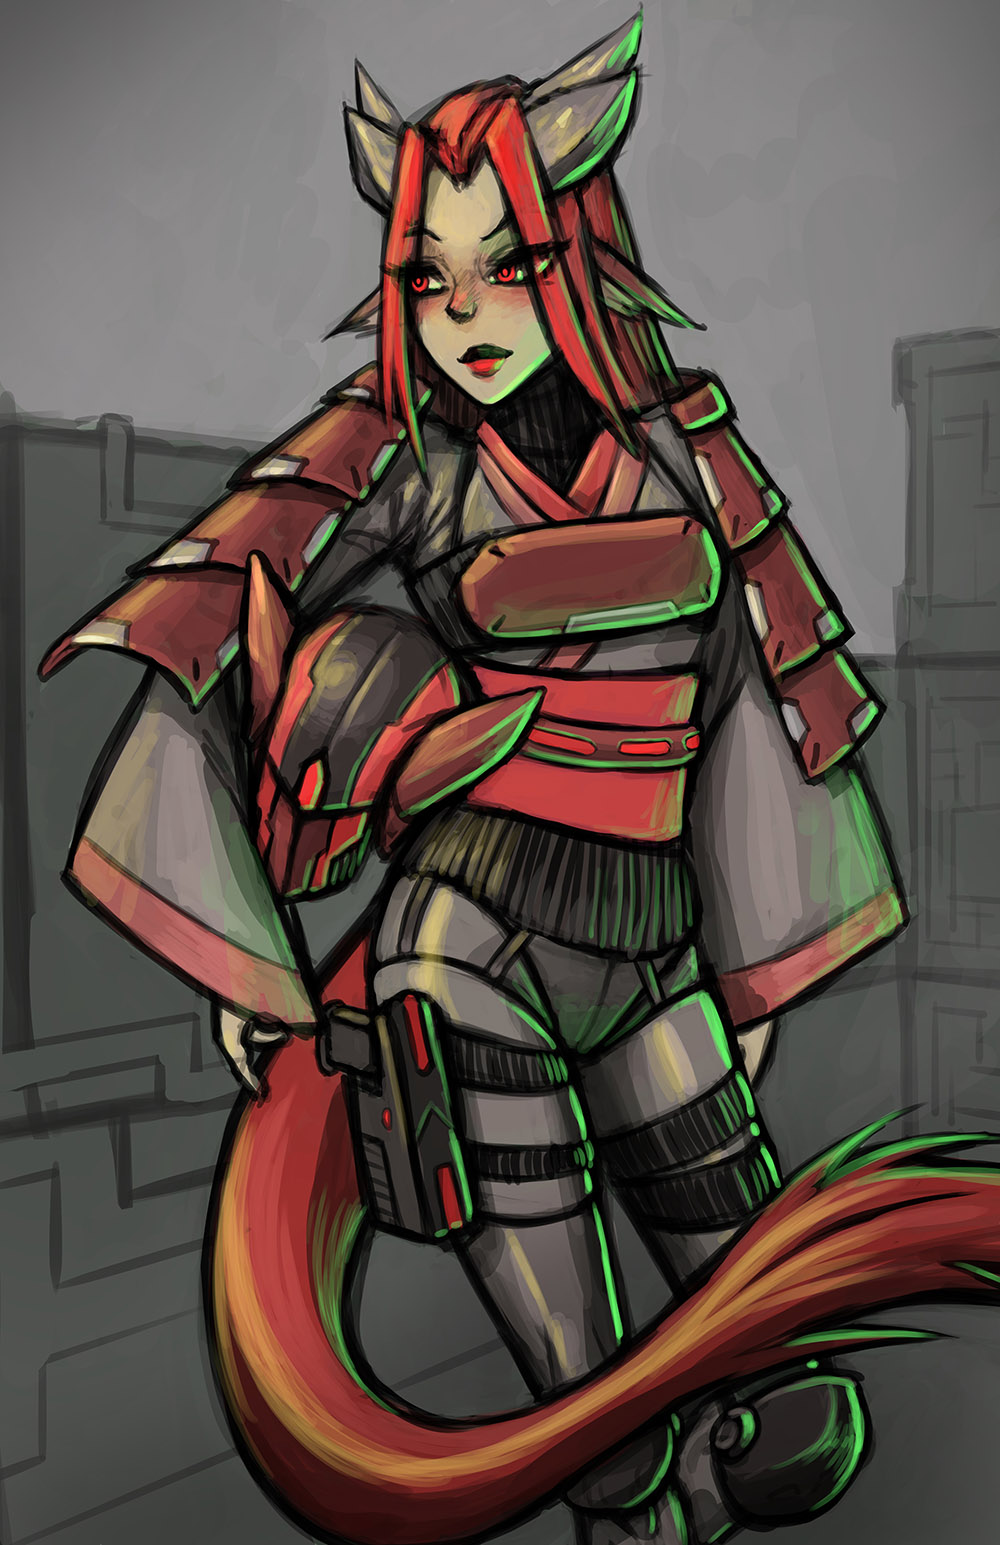 a dragongirl space fighter pilot samurai